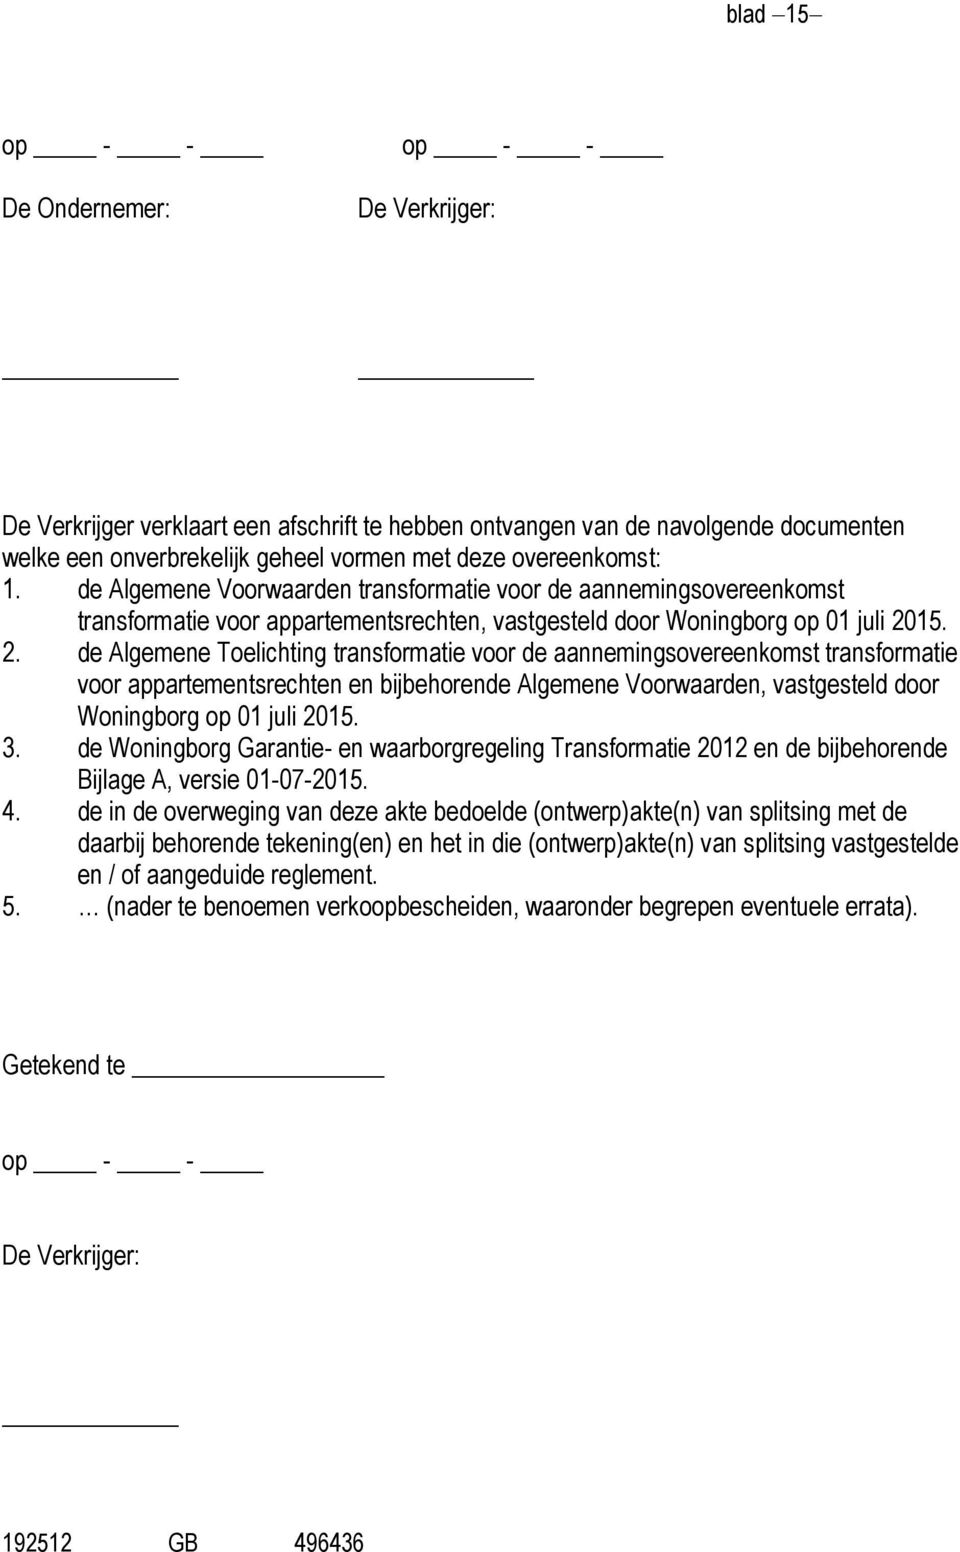 15. 2. de Algemene Toelichting transformatie voor de aannemingsovereenkomst transformatie voor appartementsrechten en bijbehorende Algemene Voorwaarden, vastgesteld door Woningborg op 01 juli 2015. 3.